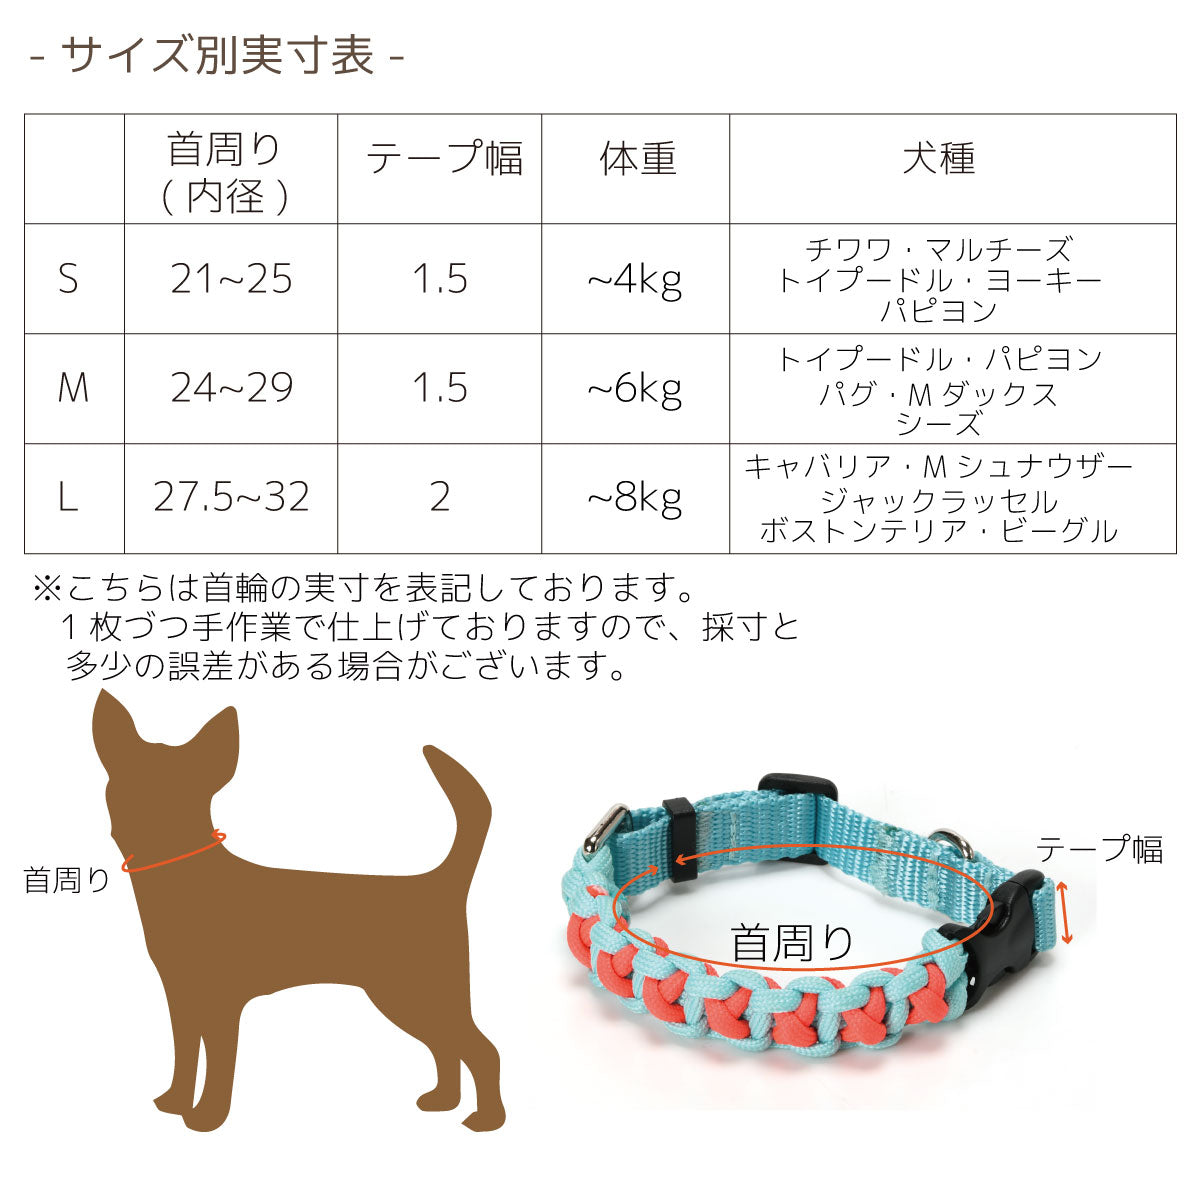 バイカラーコードカラー S/M/L Solgra-ソルグラ- 犬用 首輪 小型犬 中型犬 SO22AW so169198-1